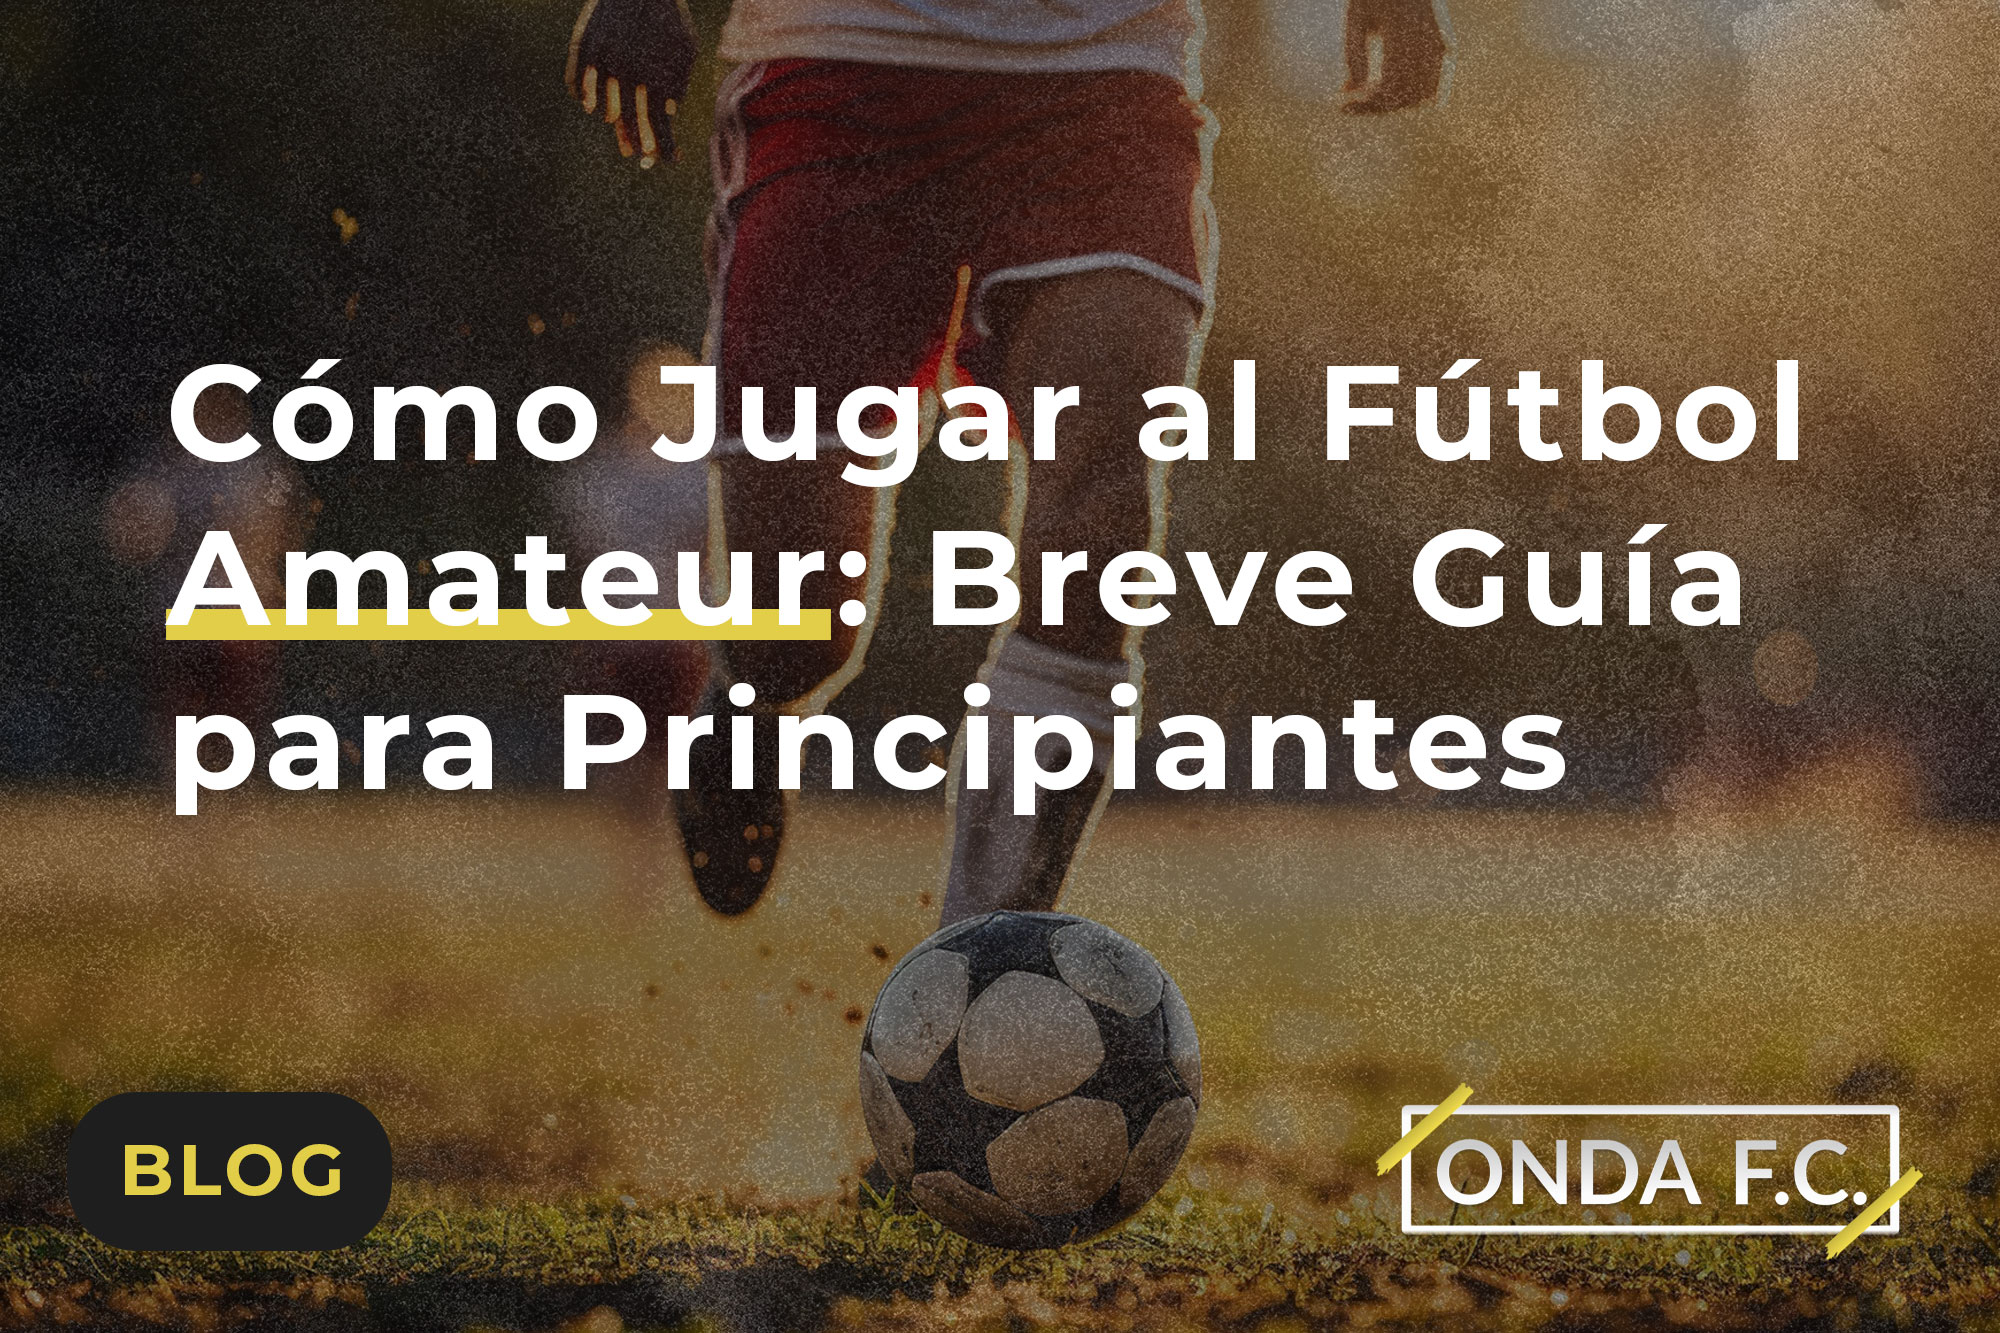 Read more about the article Cómo Jugar al Fútbol Amateur: Breve Guía para Principiantes